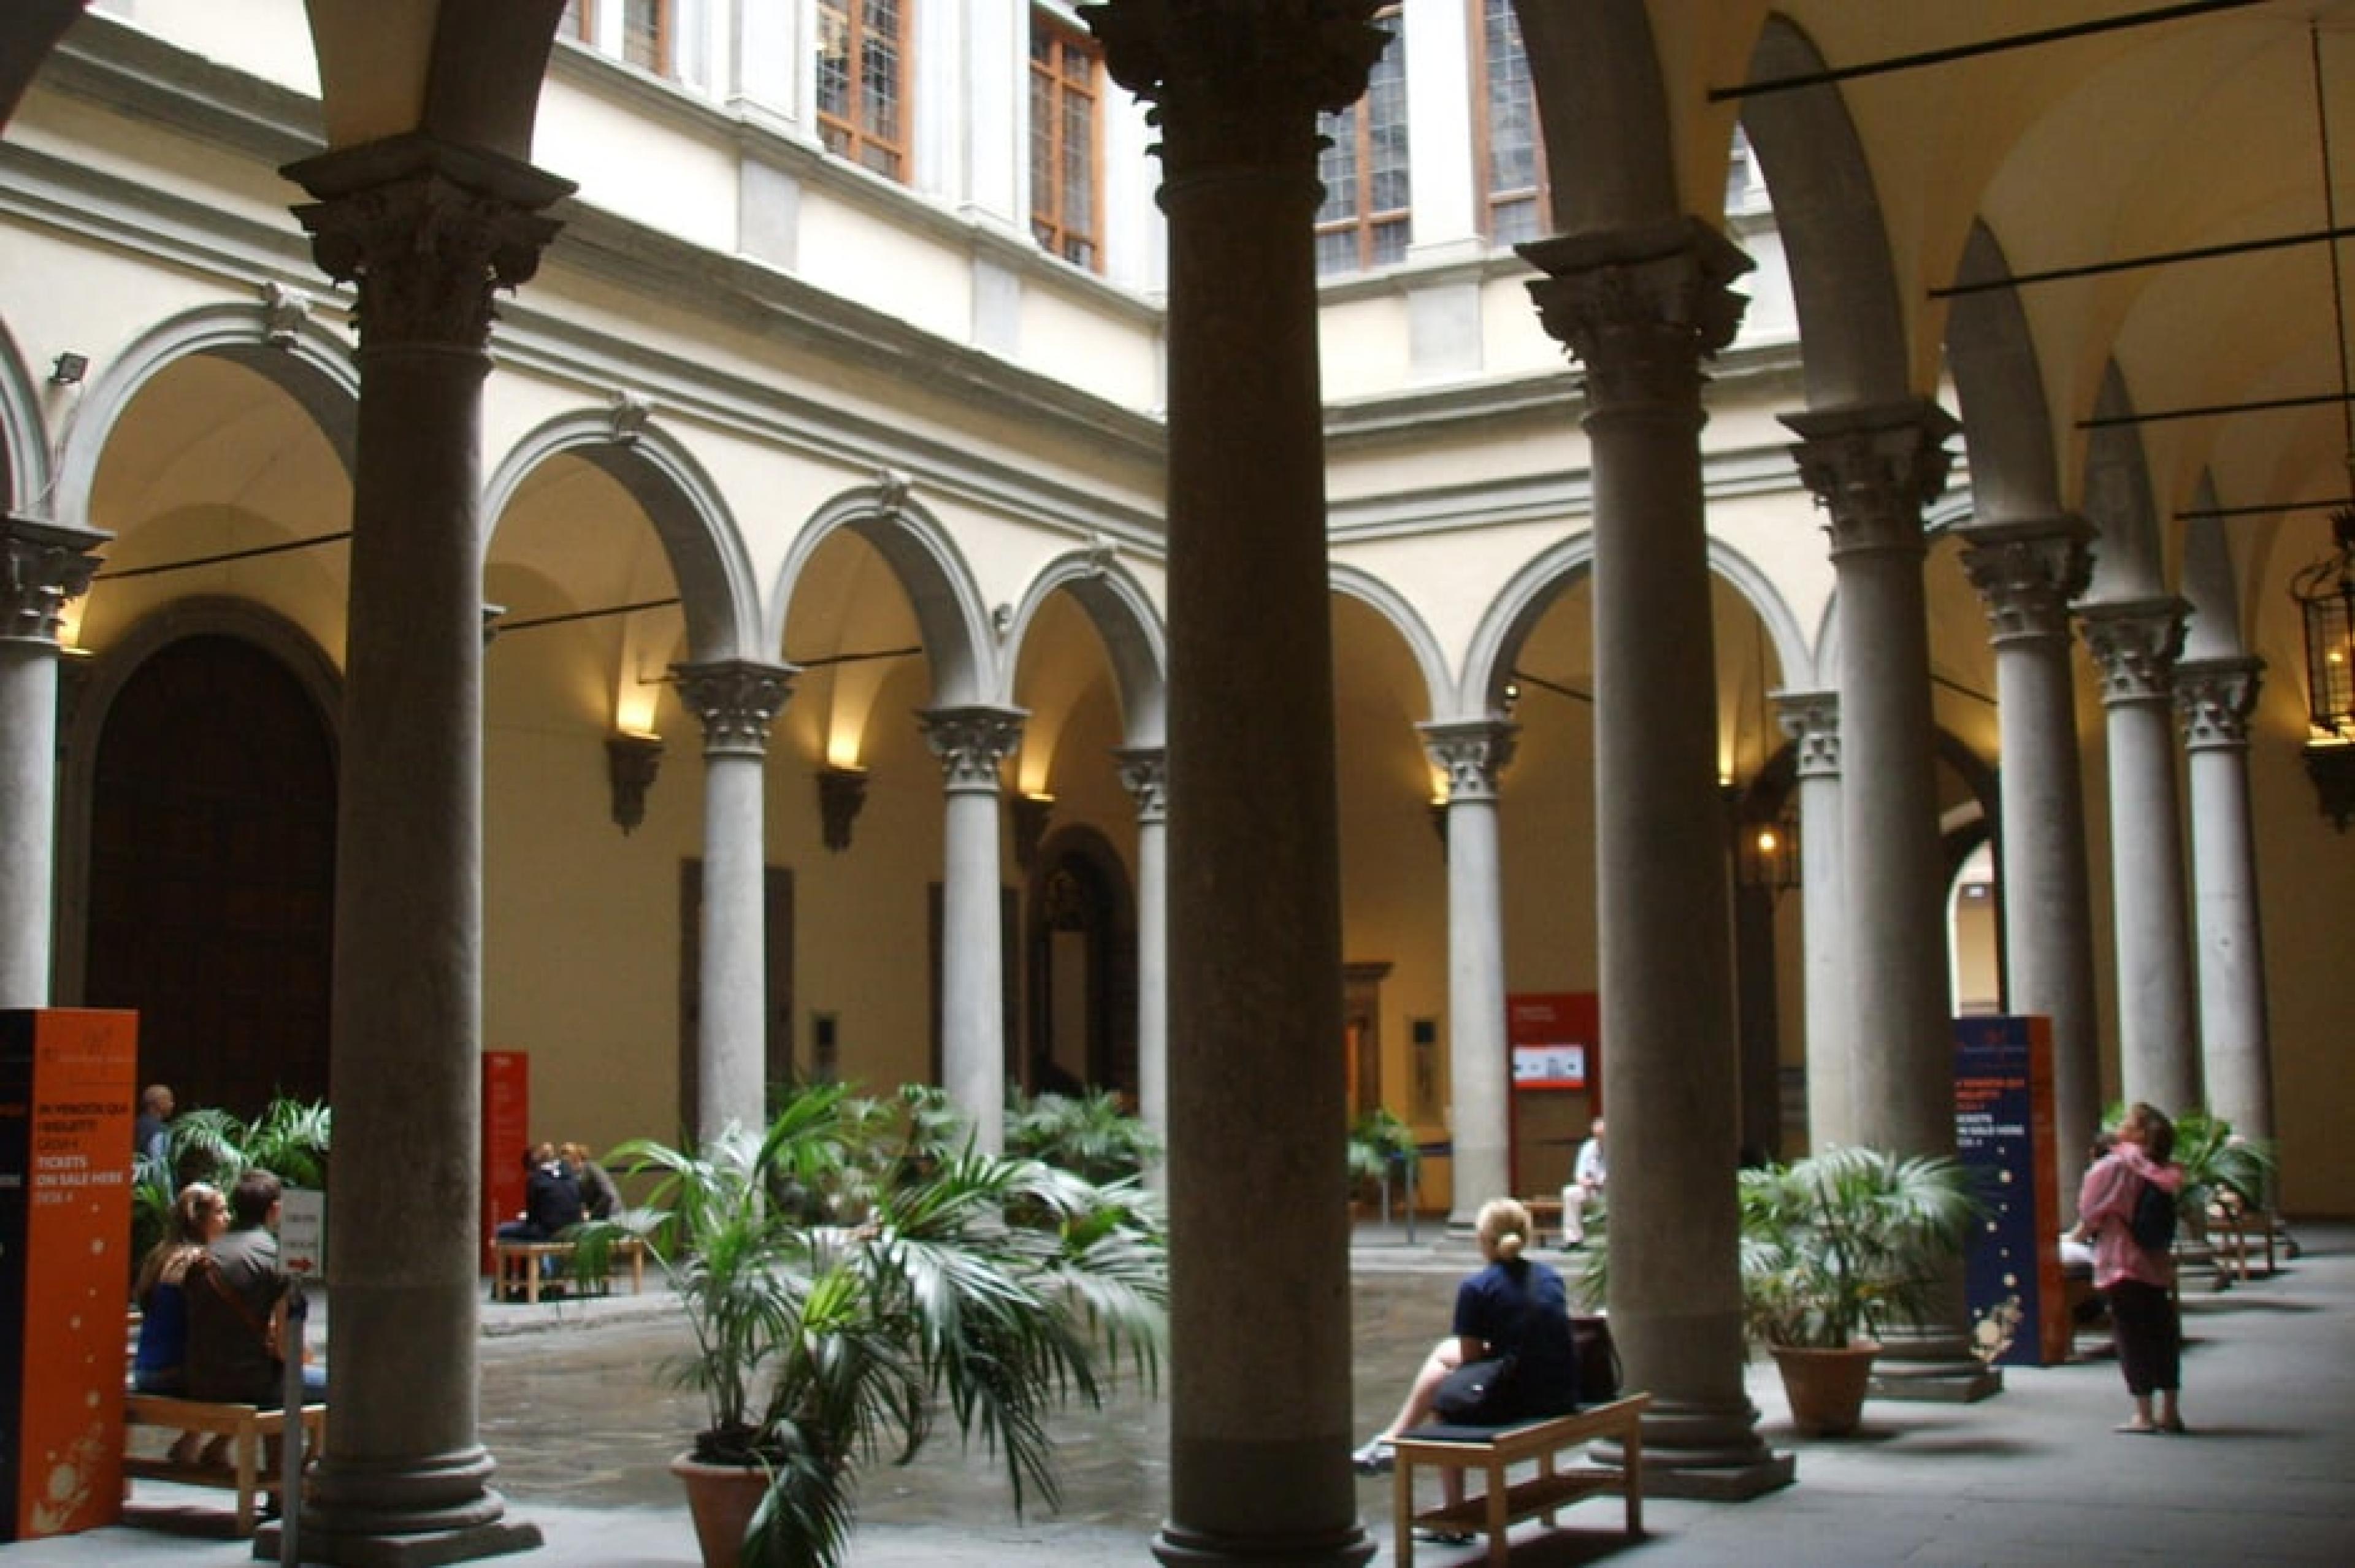 Lobby at Palazzo Strozzi, Florence, Italy - Courtesy Sai L. Ko